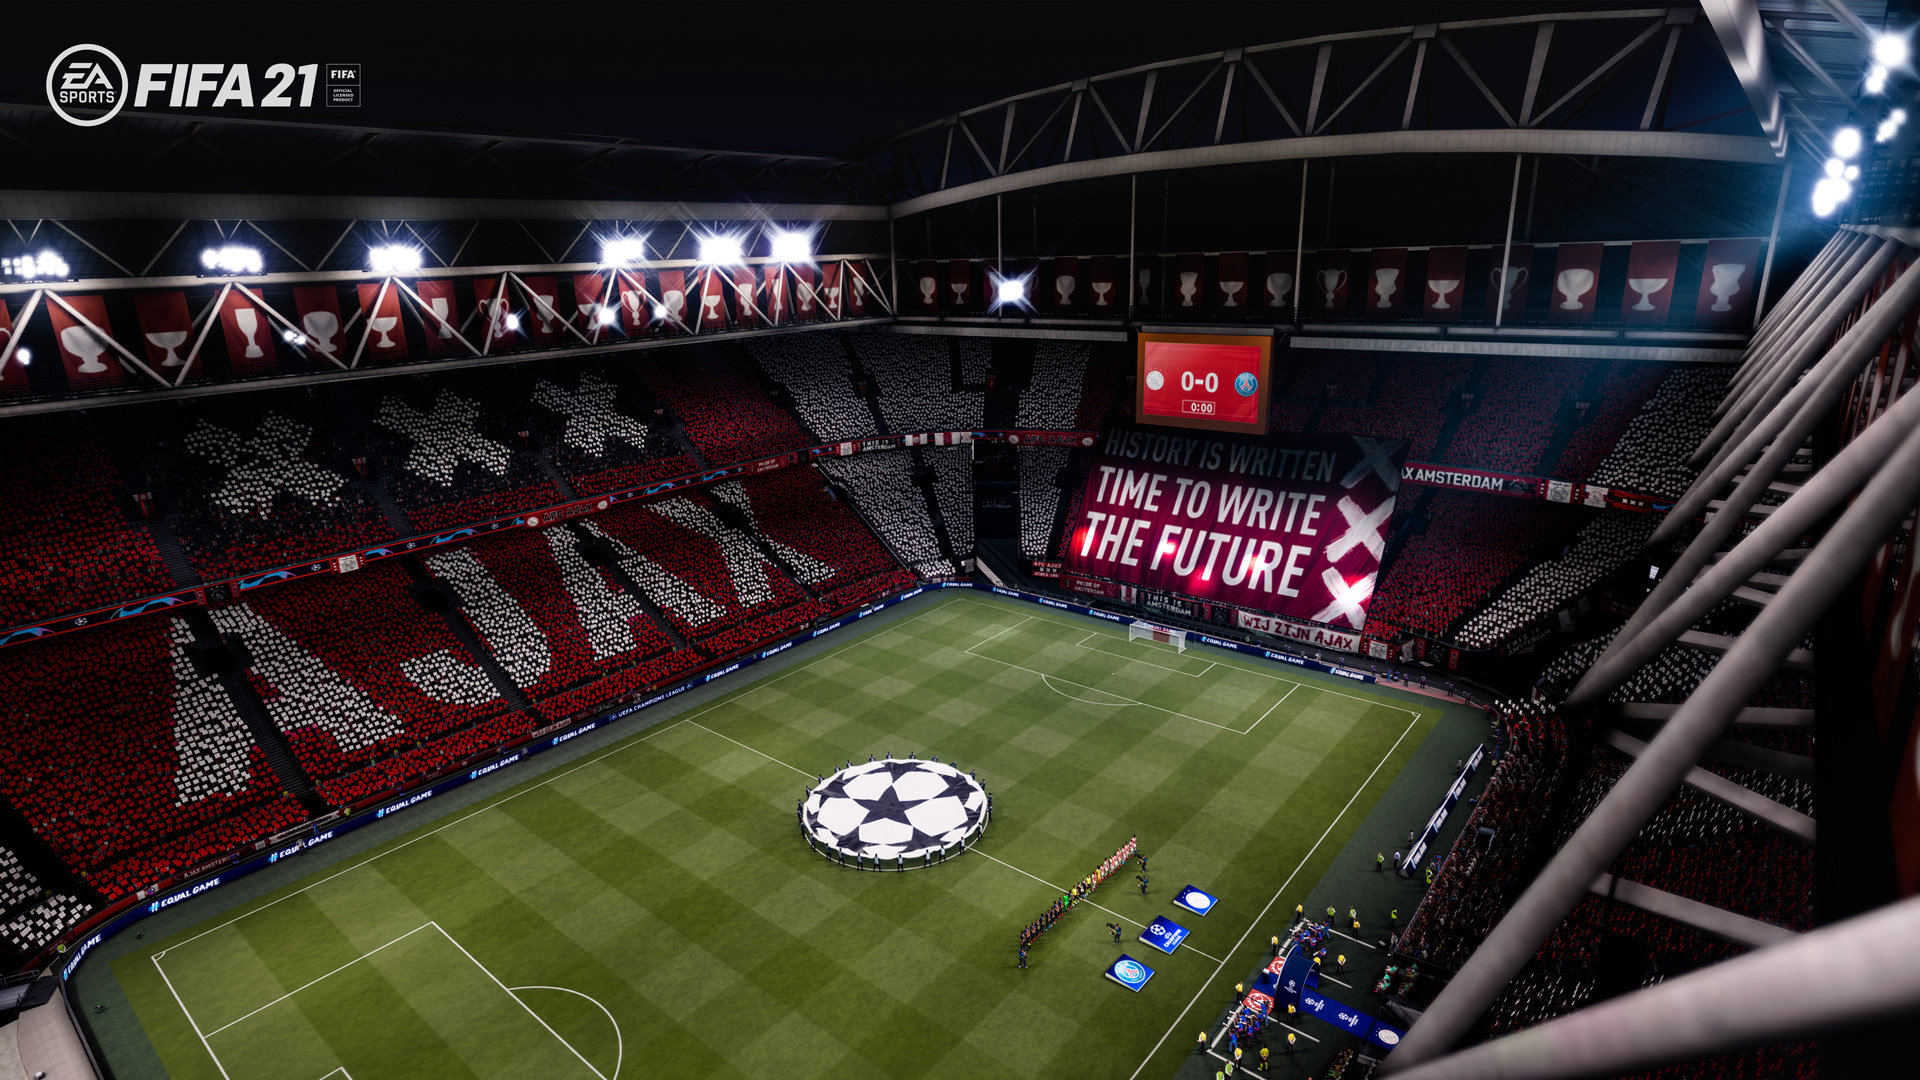 Футбол на закате поколения: обзор FIFA 21 стоит, наверняка, можно, между, серии, получили, футбола, очень, более, обязательно, изменений, команду, особенно, проект, ожидать, Теперь, новой, который, студия, футболисты